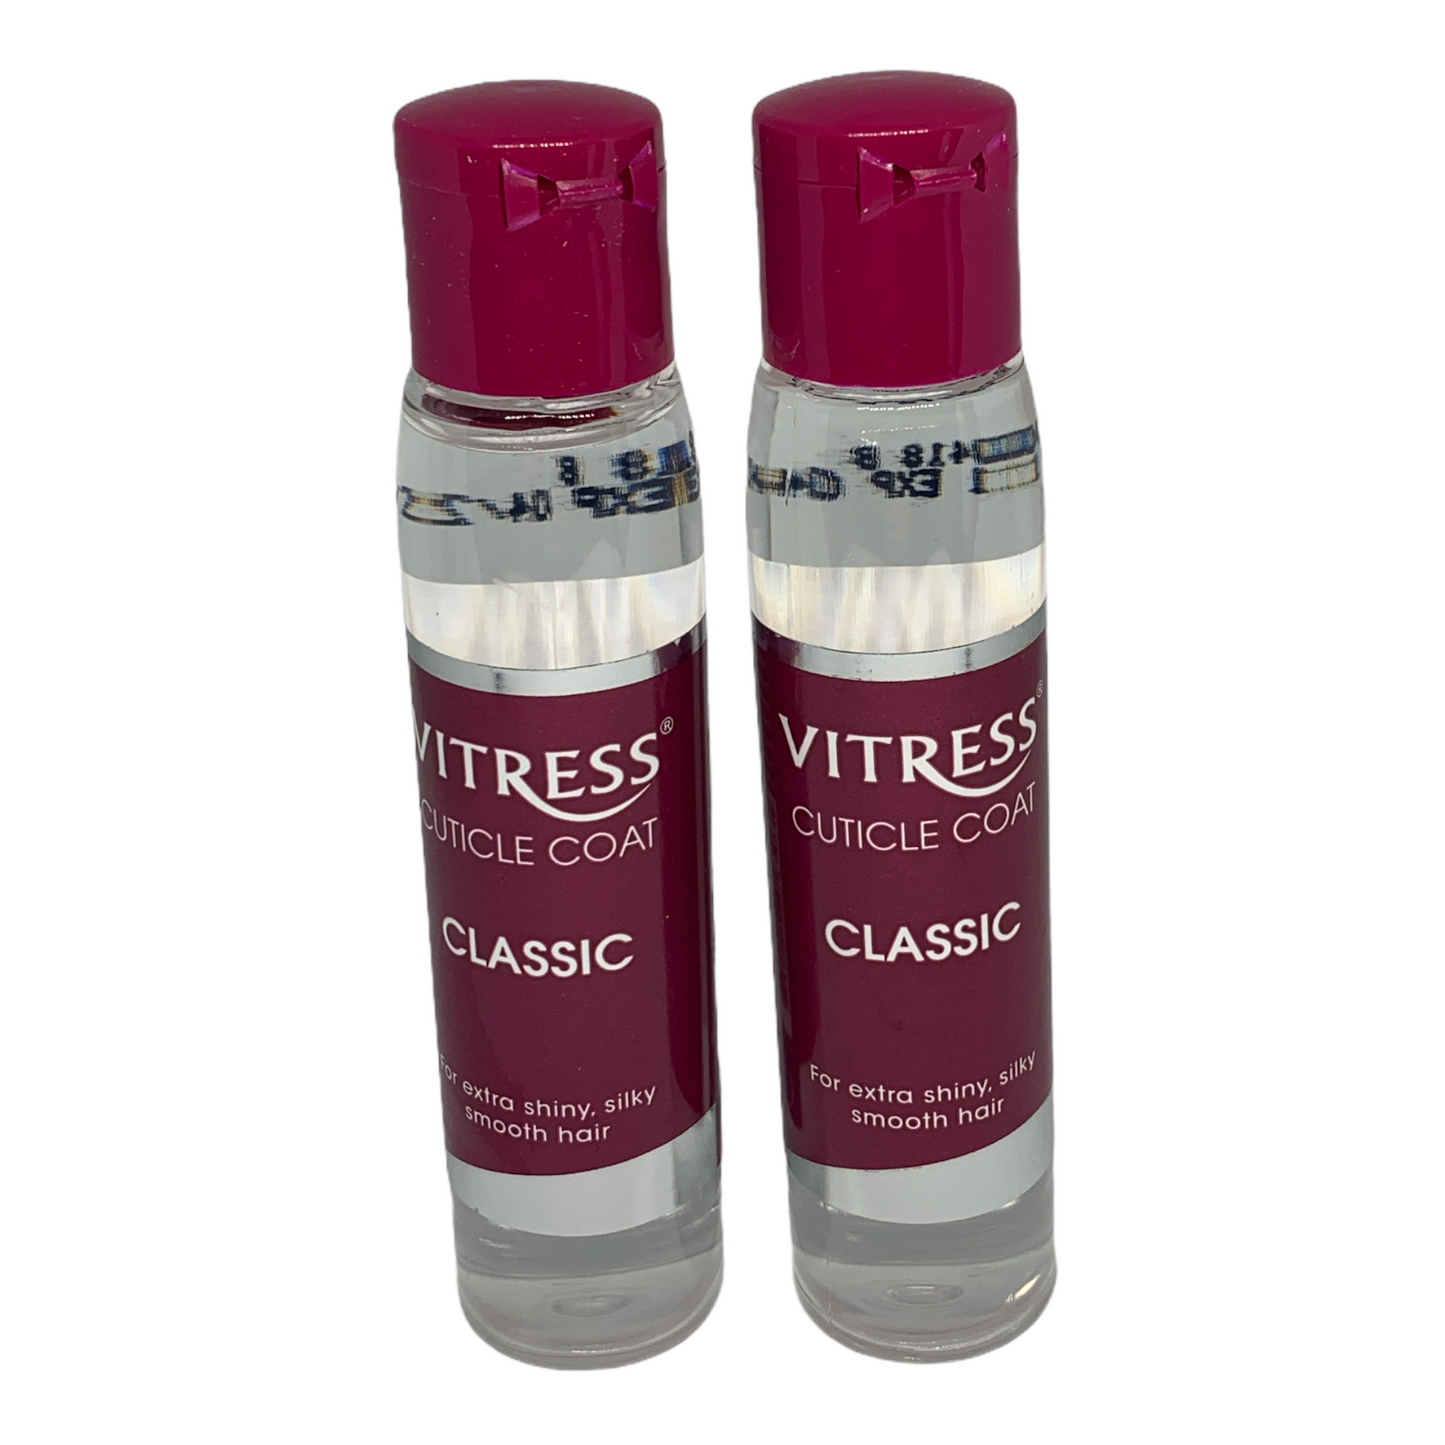 Vitress Hair Cuticle Coat Classic 30ml (2 bottles)